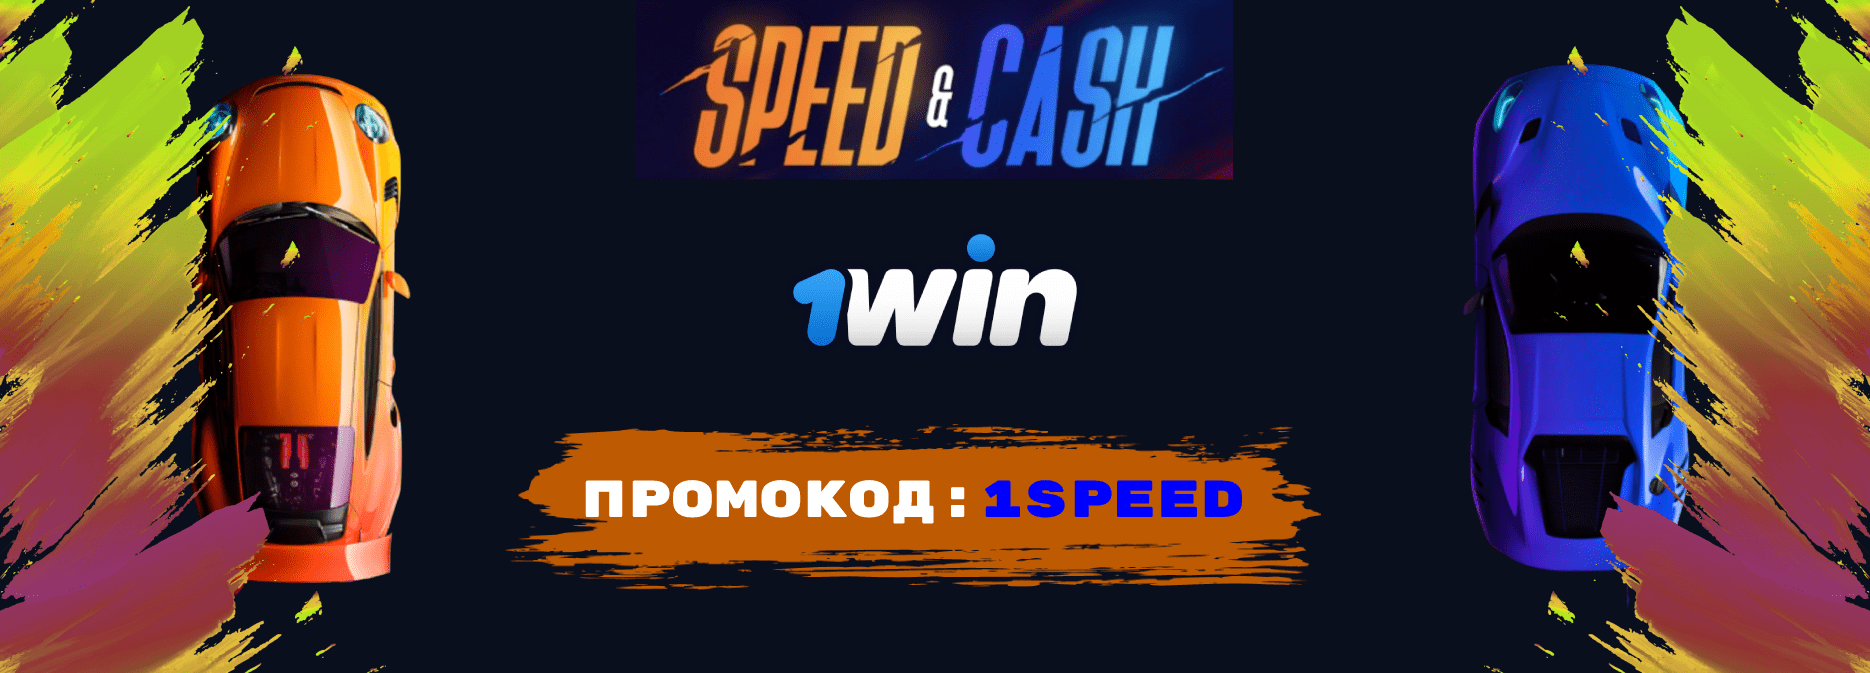 Speed n cash 1win стратегия 200